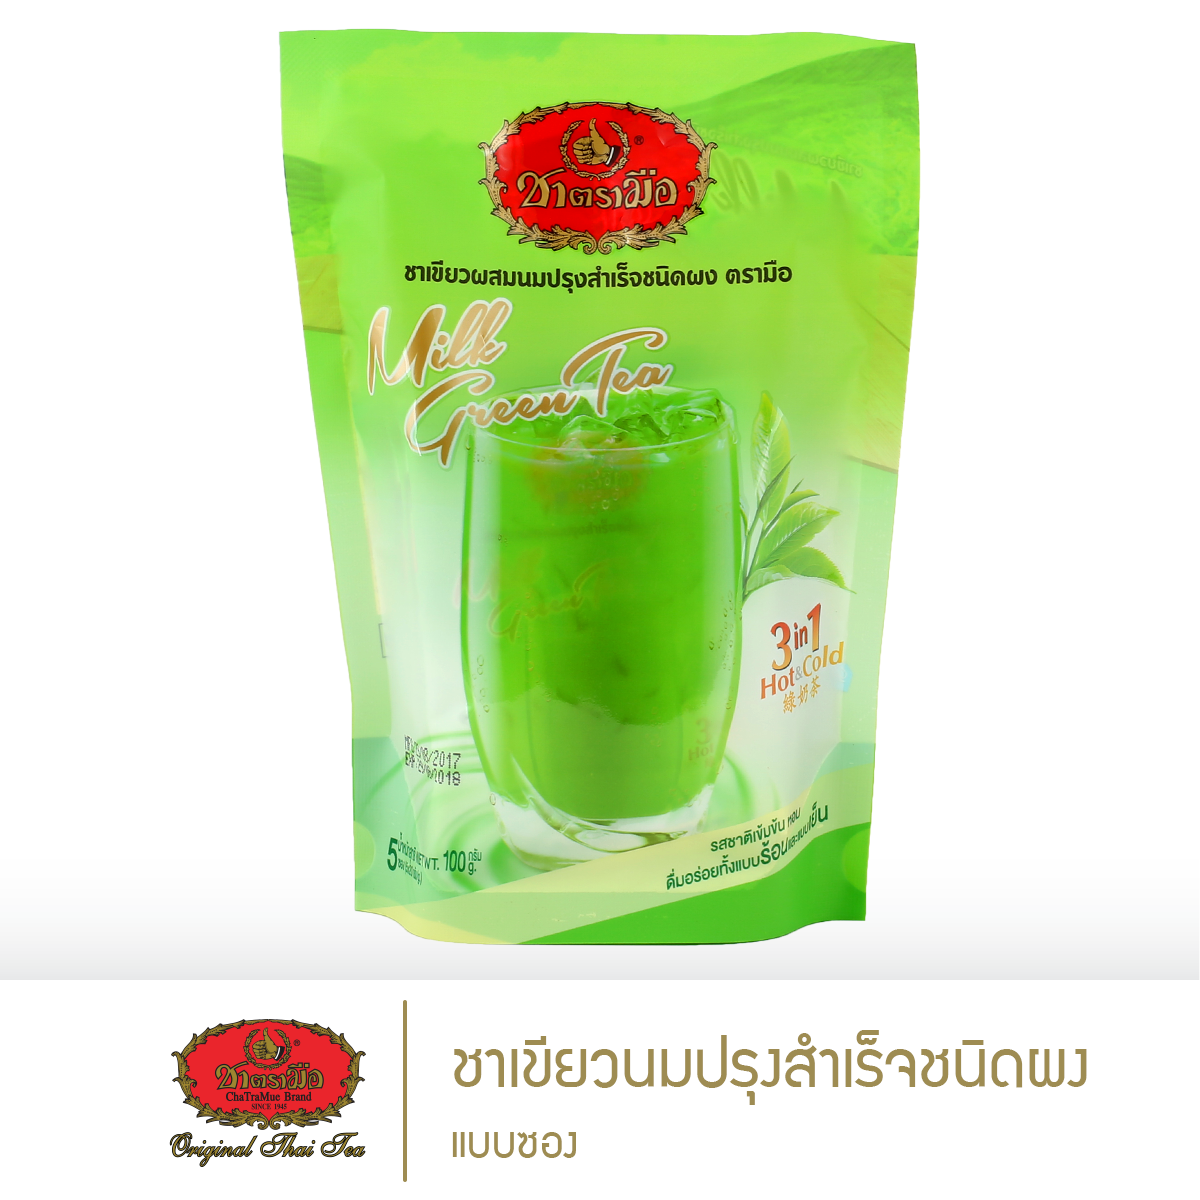 ชาตรามือ ชาเขียวนมปรุงสำเร็จชนิดผง - แบบซอง (INSTANT MILK GREEN TEA - SMALL PACKED IN BAG)